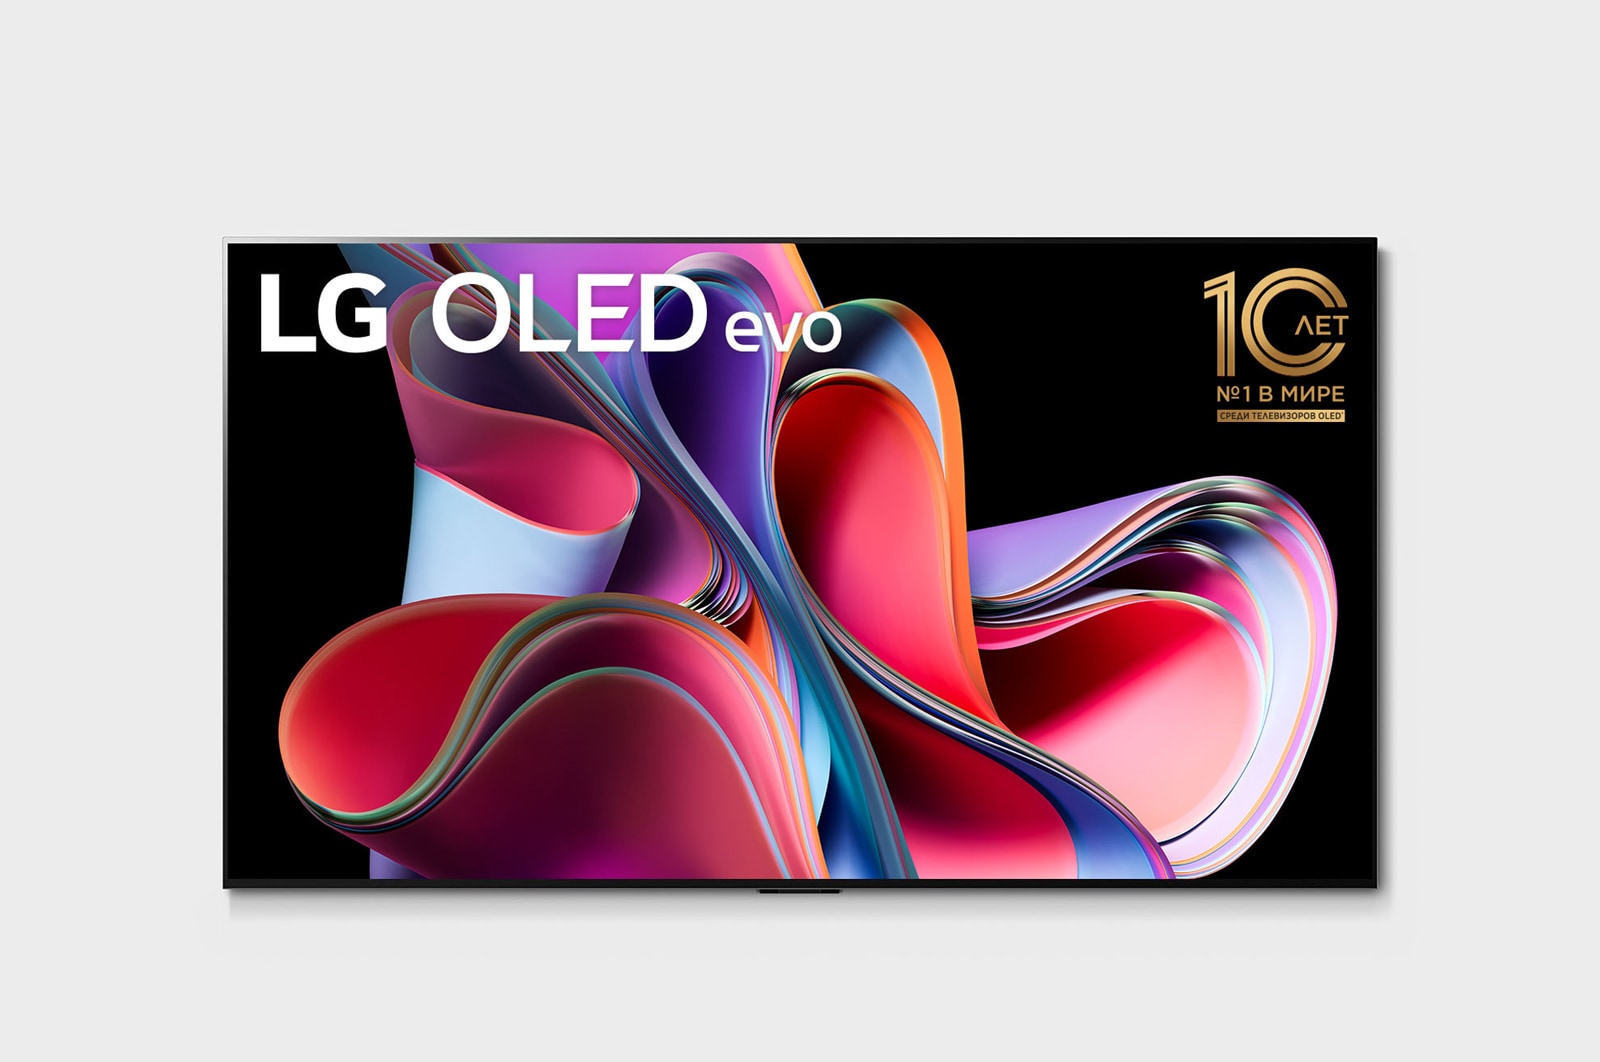 LG 4K Ultra HD OLED телевизор 77'' LG OLED77G3RLA, Вид спереди LG OLED evo серии Gallery, OLED77G3RLA